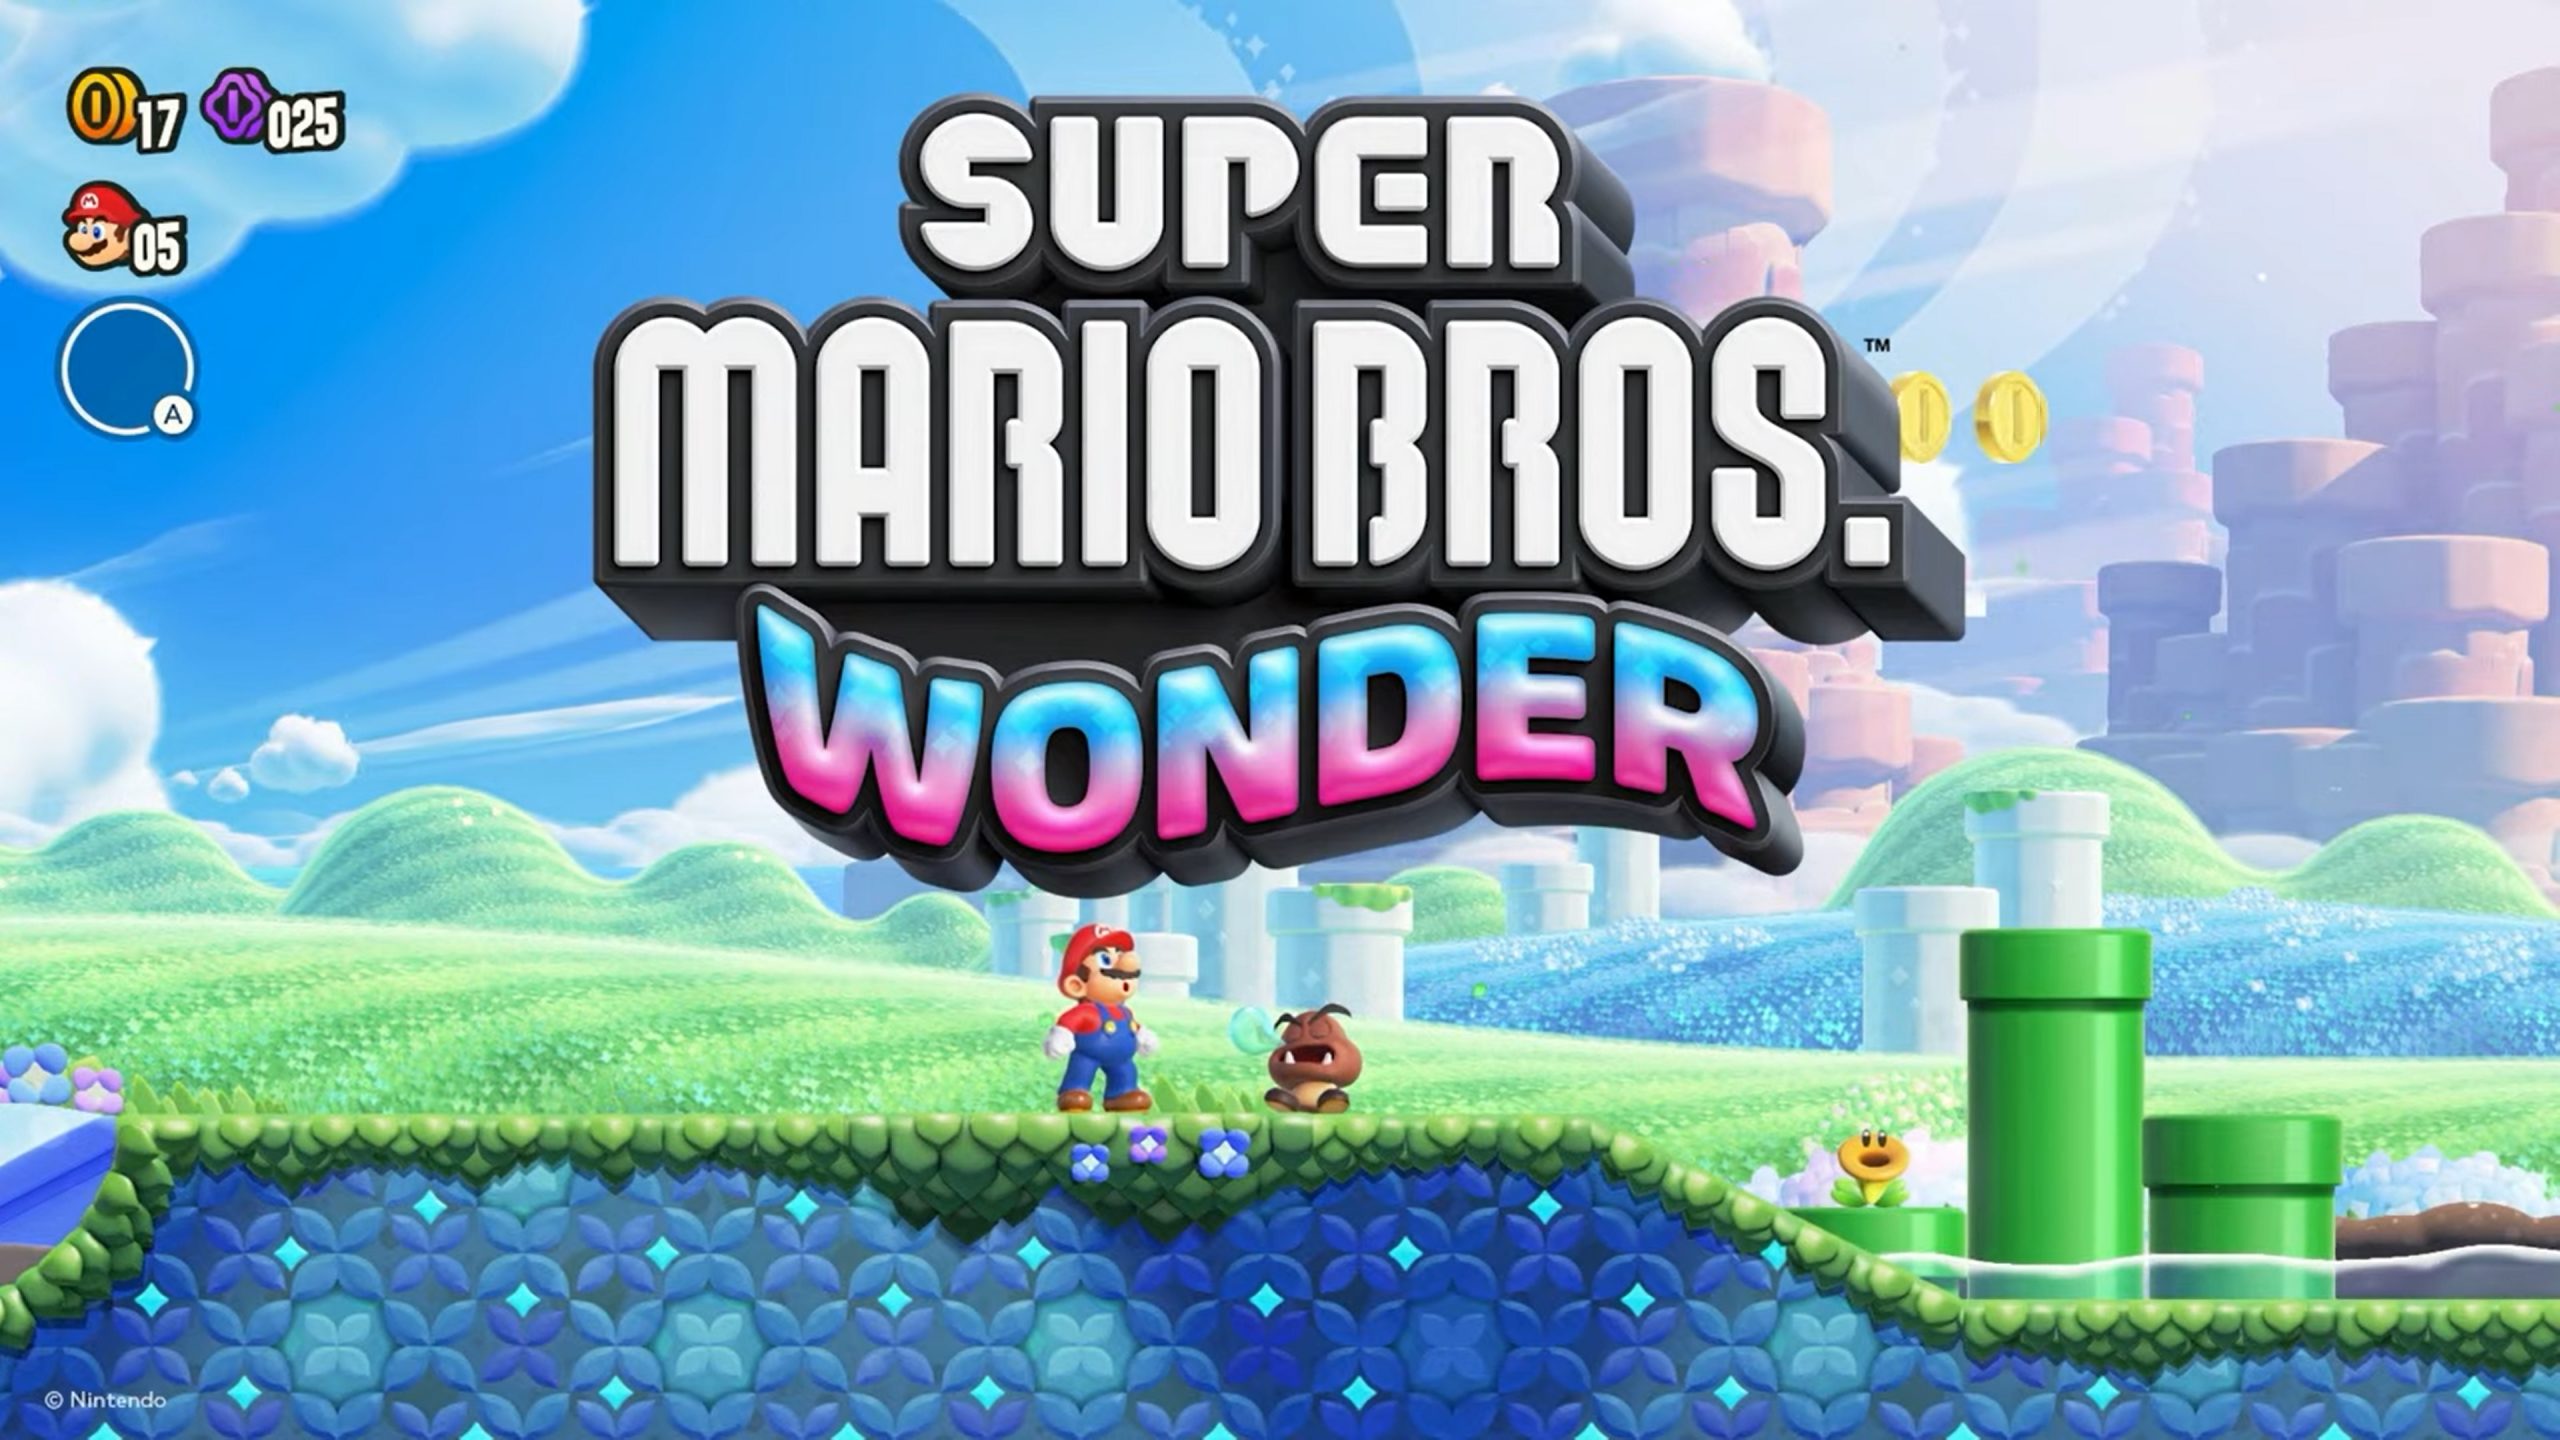 Antalet fysiska exemplar av Super Mario Bros. Wonder som såldes i Japan uppgick till över 638 tusen. Spelet tog första platsen i listorna